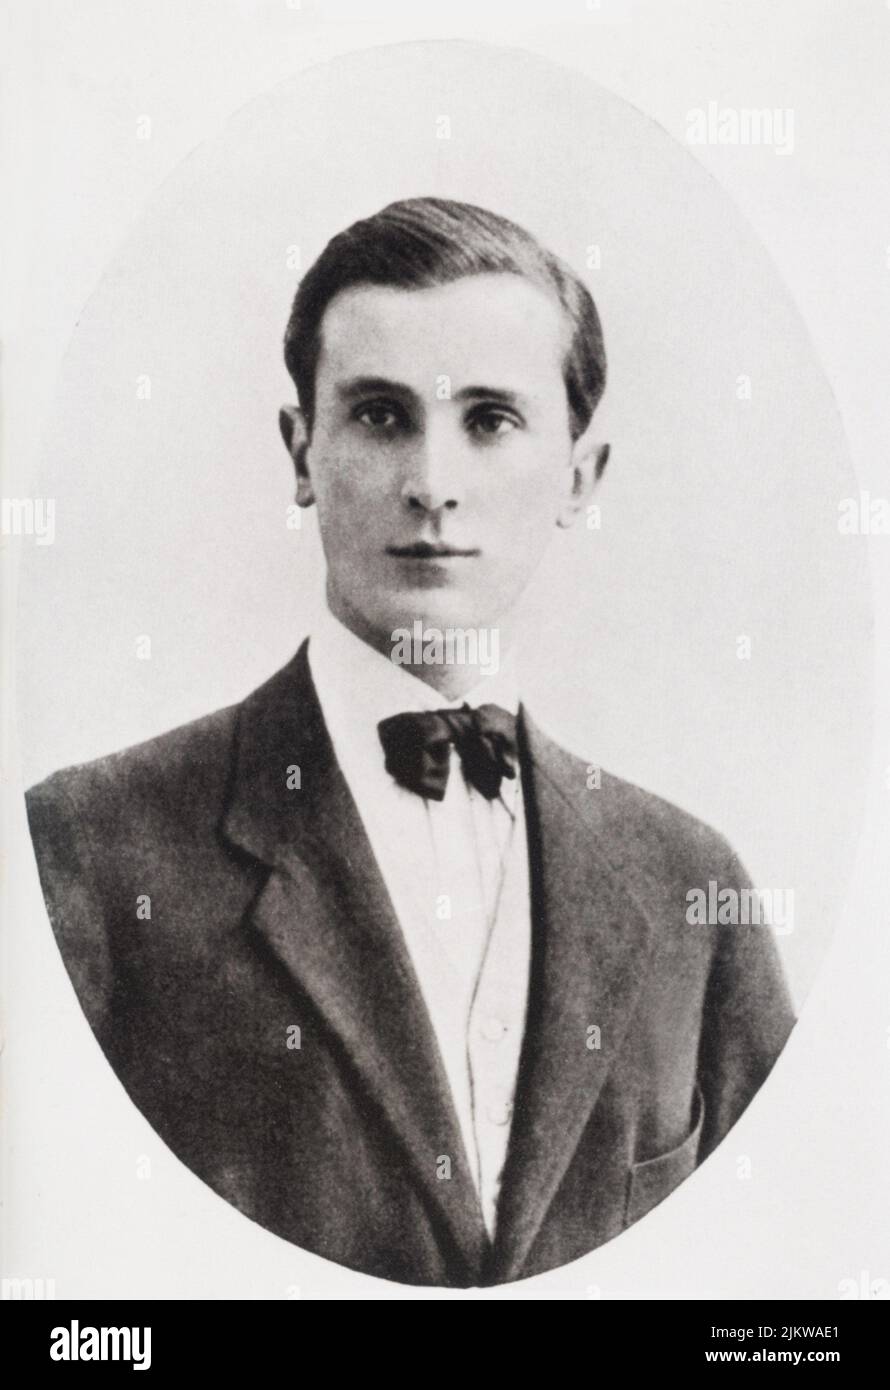 1909 , Università di Oxford , Inghilterra : Il principe russo FELIX YOUSSOUPOV (1887 - 1967 ) , assassino del celebre sacerdote russo Grigorij Efimovic RASPUTIN ( 1871 - 1916 ) - ritratto - ritratto - cravatta - tie - papillon - nobile russo - nobiltà russa - RUSSIA - nobiltà - royalty - RASPOUTINE ---- Archivio GBB Foto Stock